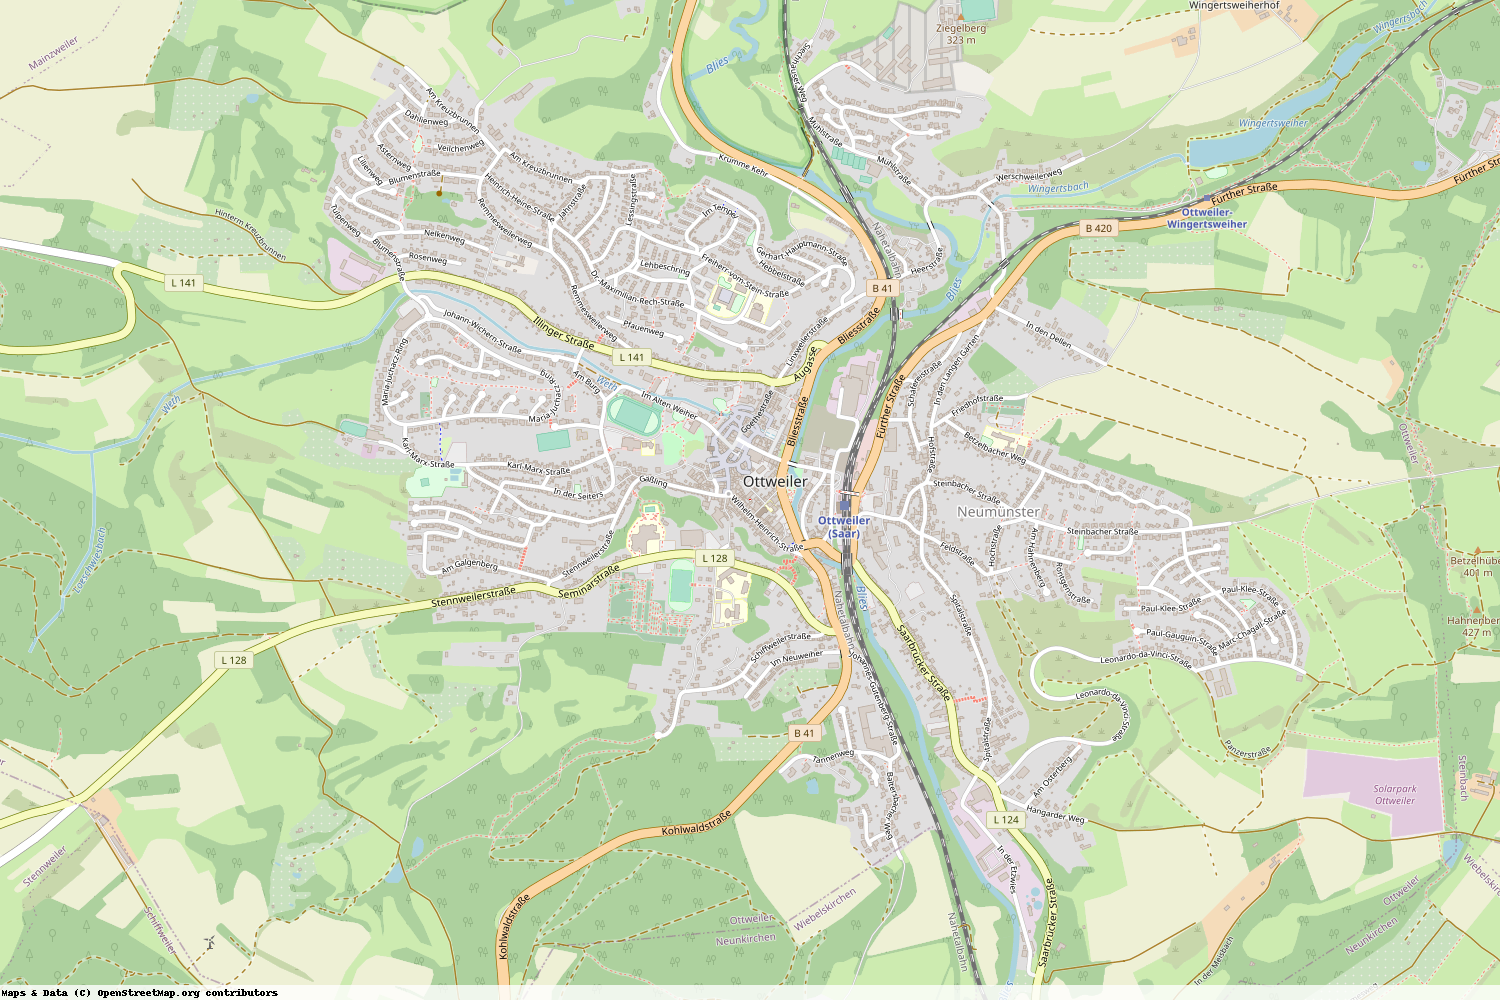 Ist gerade Stromausfall in Saarland - Neunkirchen - Ottweiler?